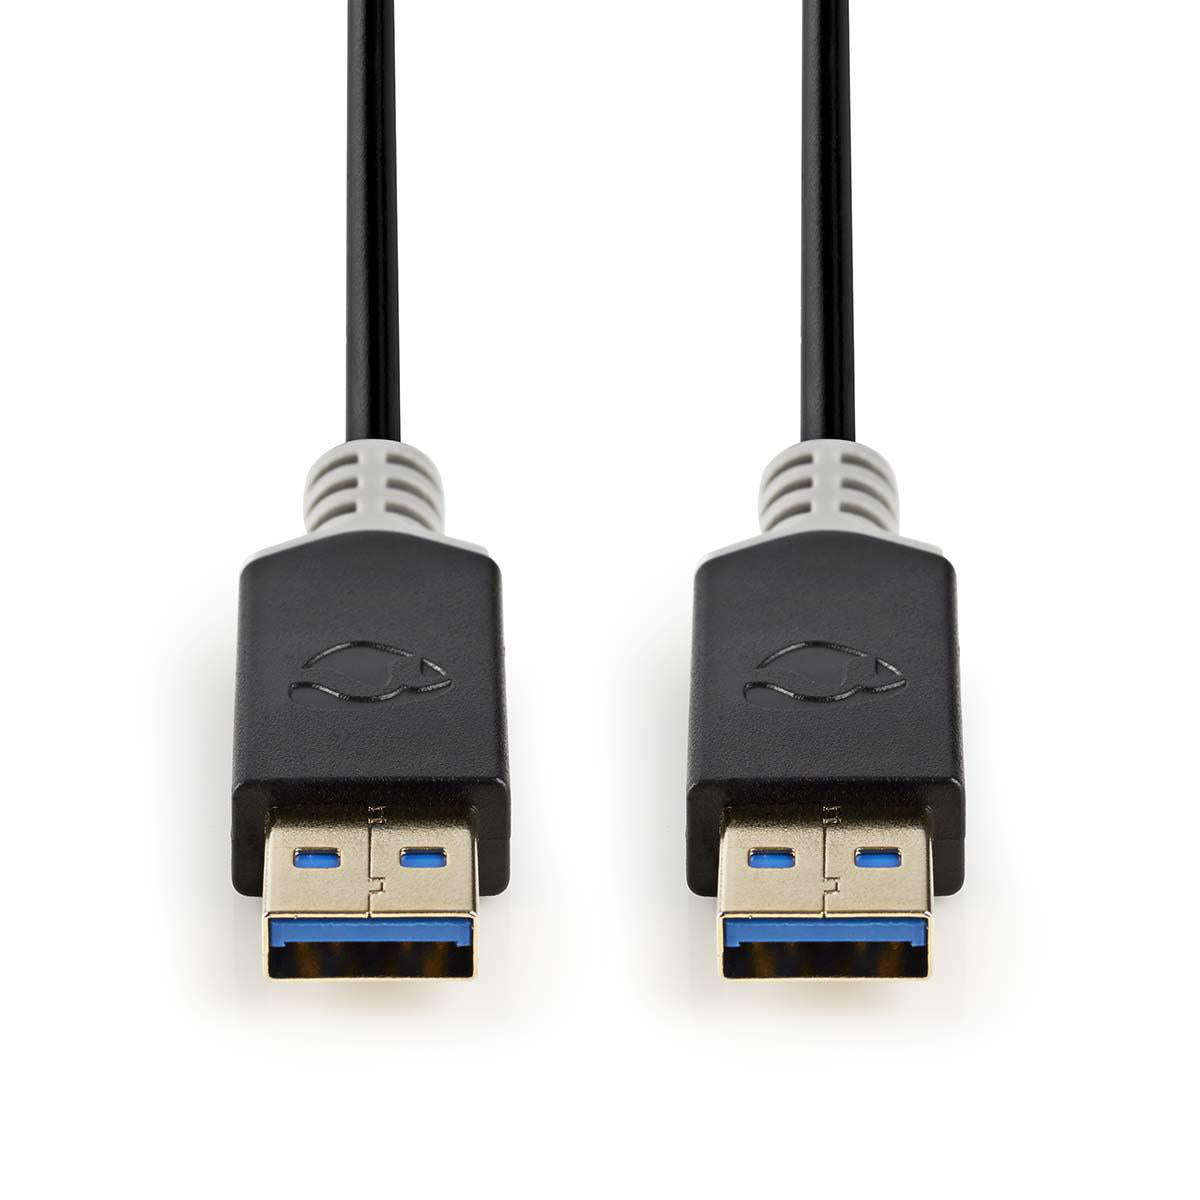 Datenkabel, USB 3.2 Gen1, USB C Stecker auf USB A Stecker, 2 Meter, 5 Gbit/s, Vergoldet, Schwarz, Vergoldet, MediaKabel